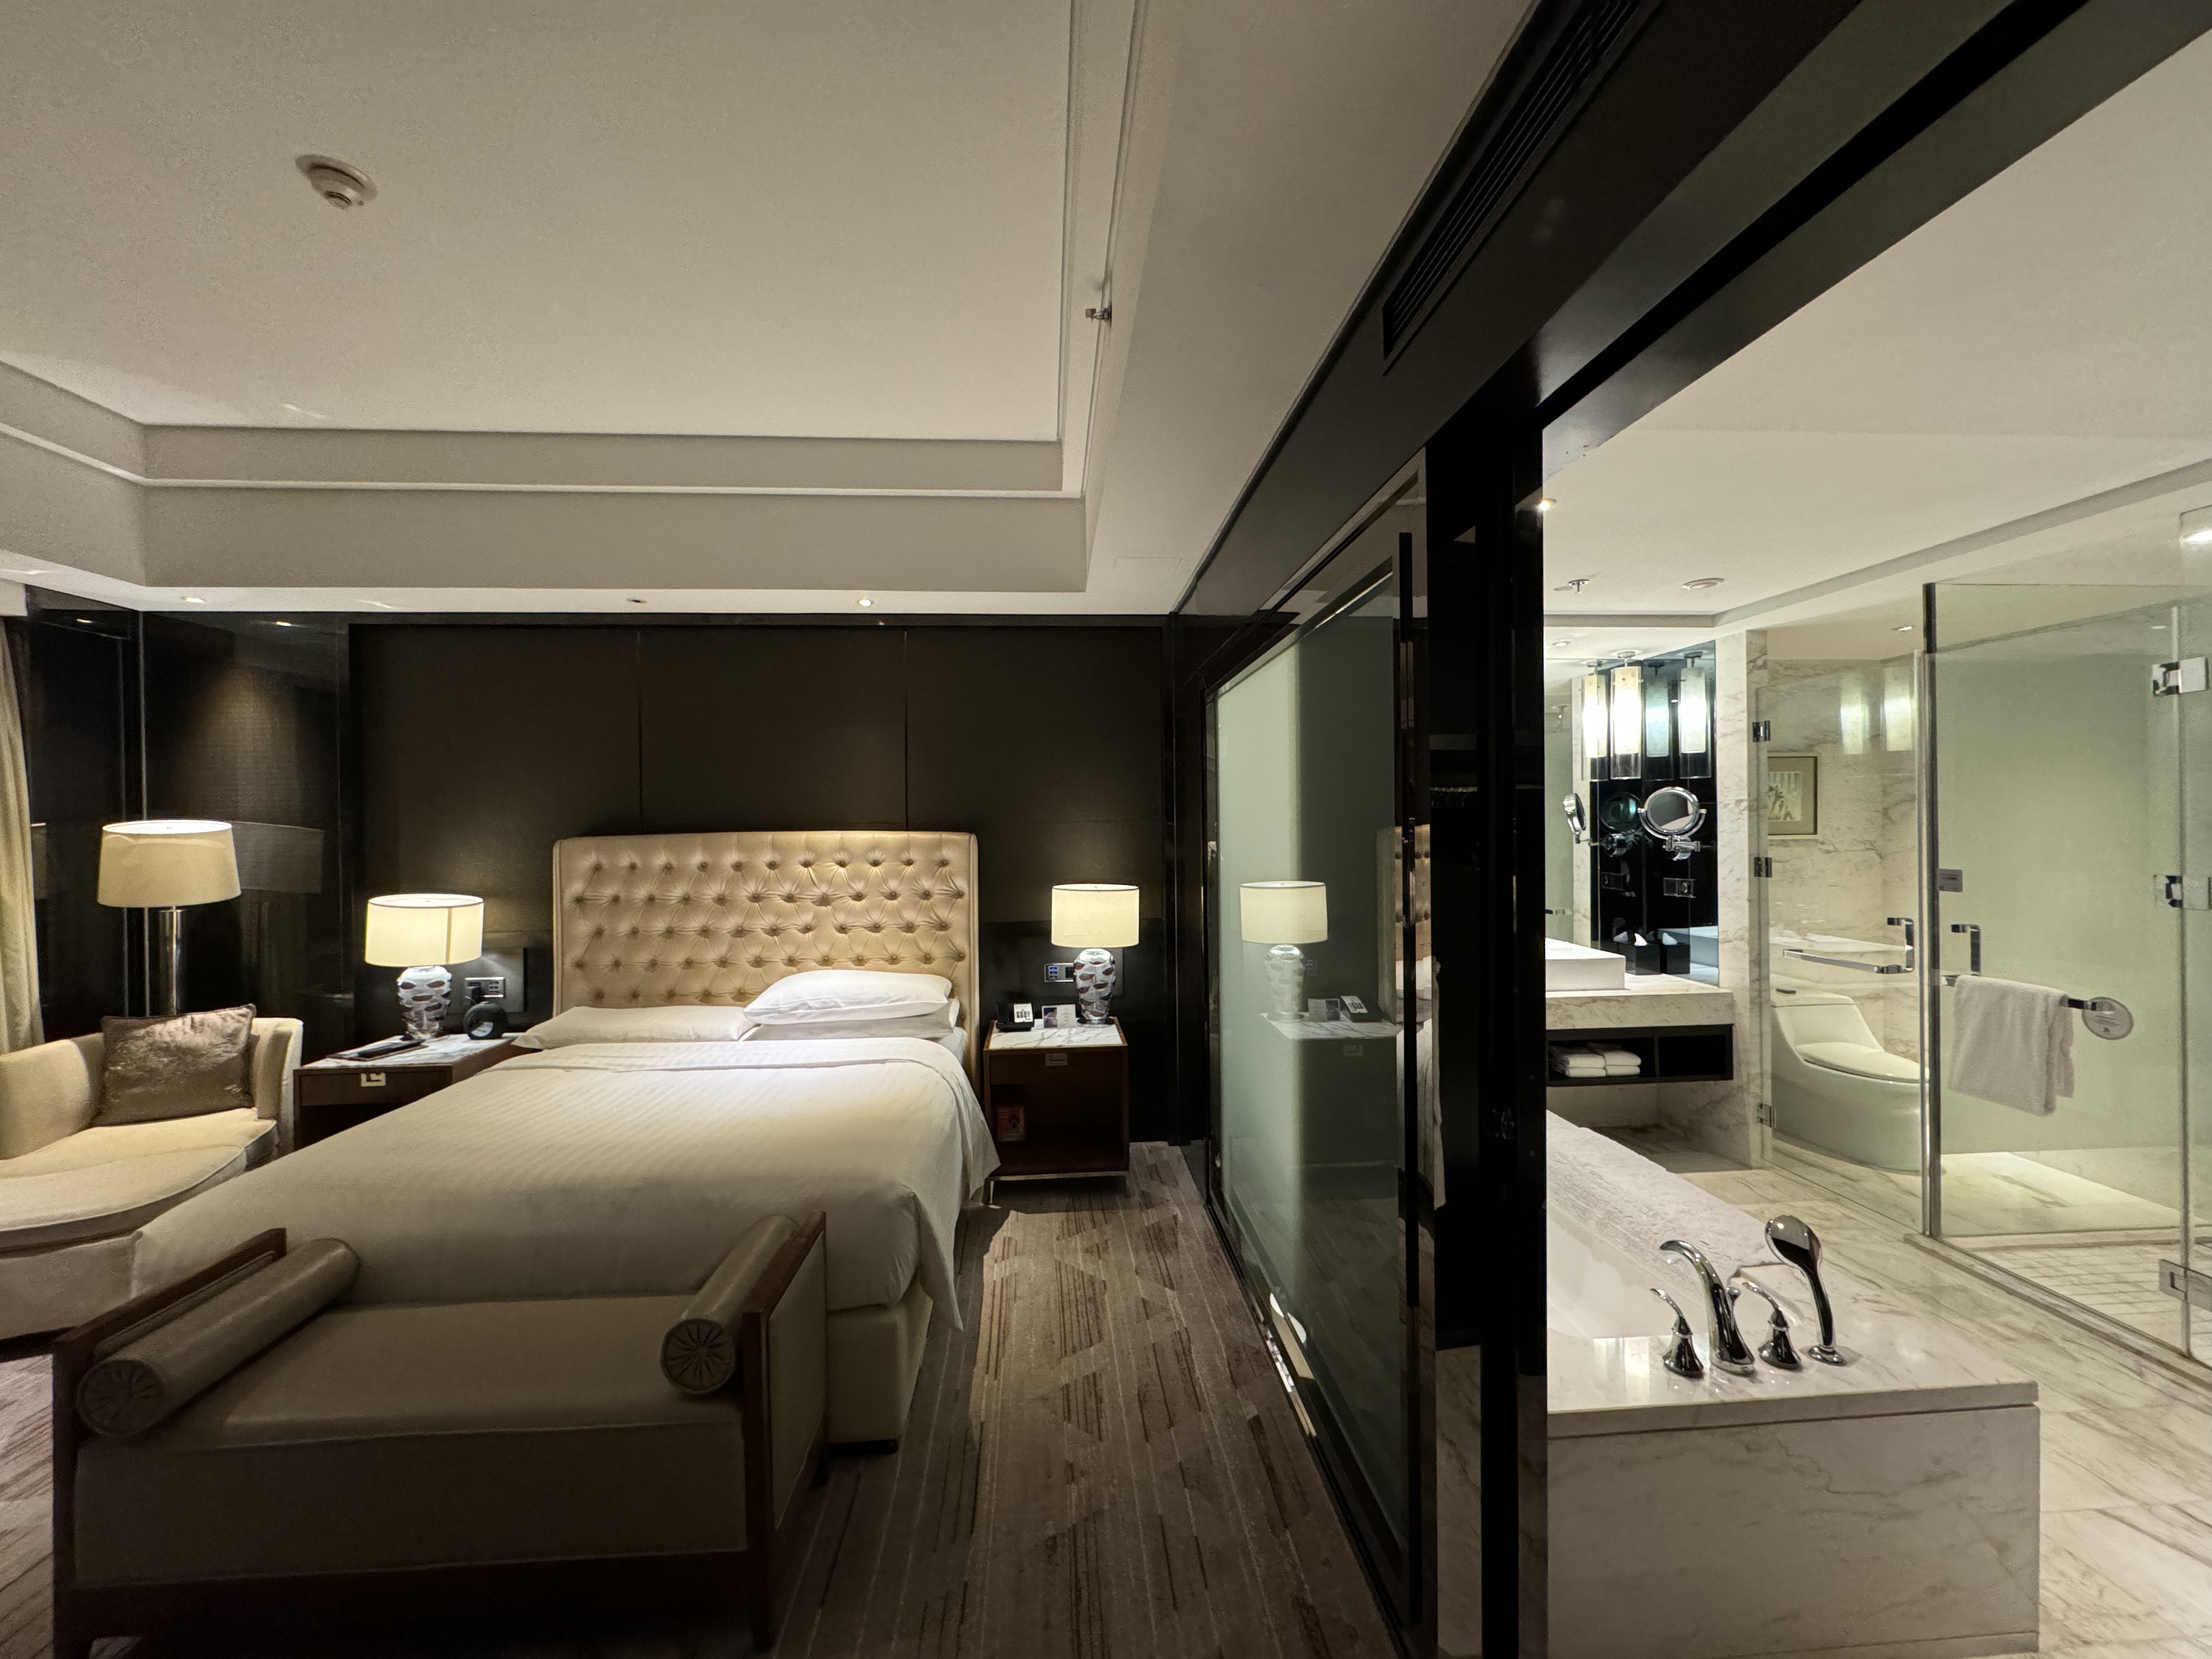 [FANG] Zhuzhou Marriott Hotel | Ƶ